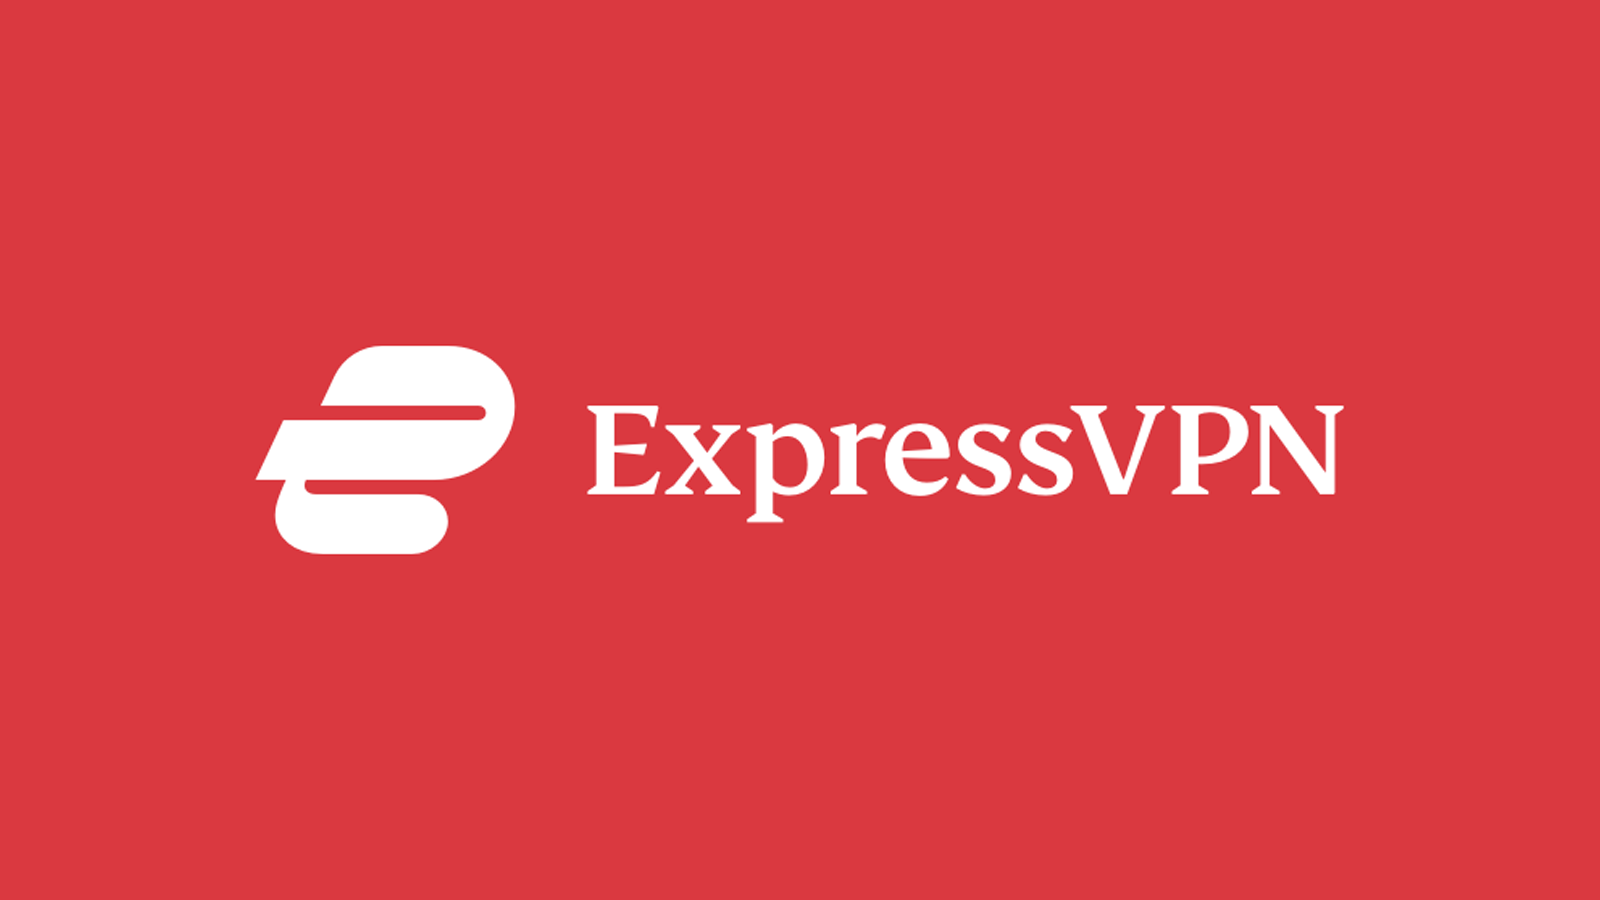 Tên và logo công ty ExpressVPN trên nền đỏ